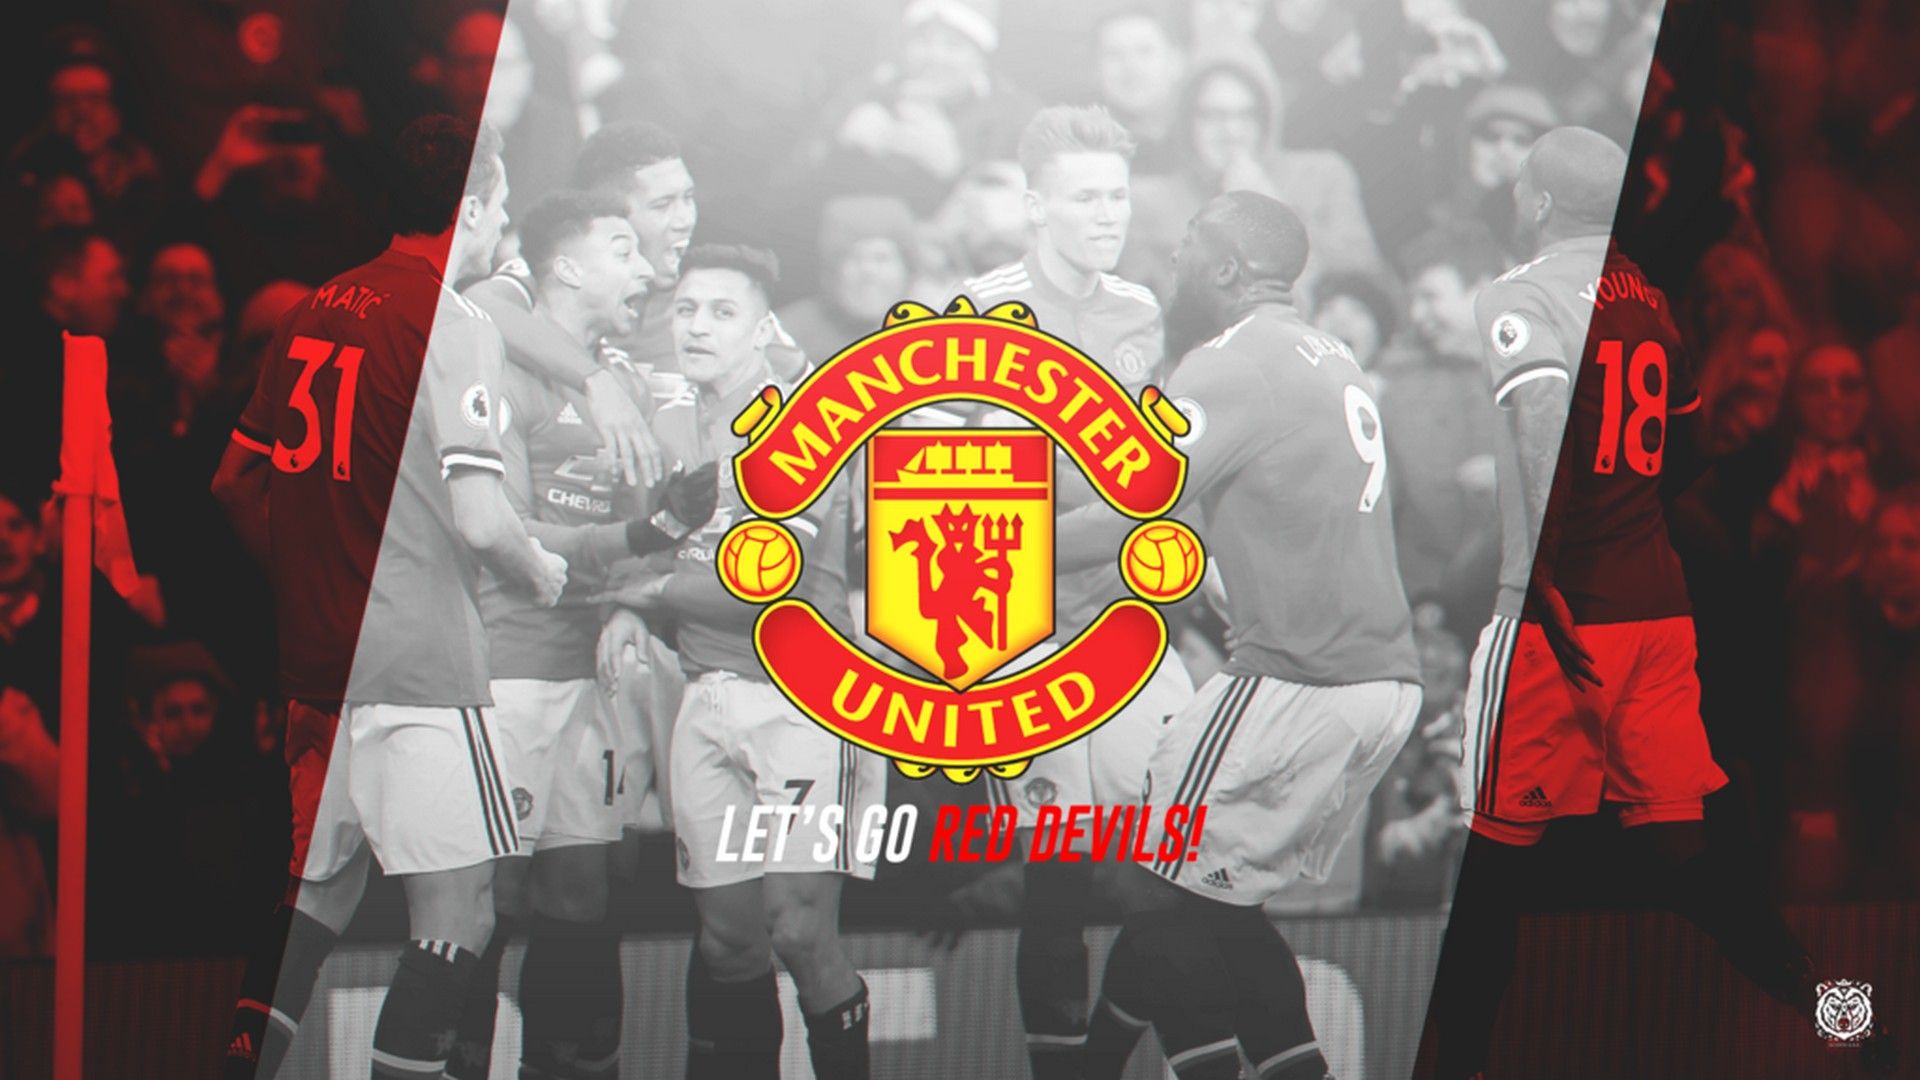 HD Desktop Wallpaper Manchester United. Best Football Wallpaper HD. Manchester united wallpaper, Football wallpaper, Manchester united